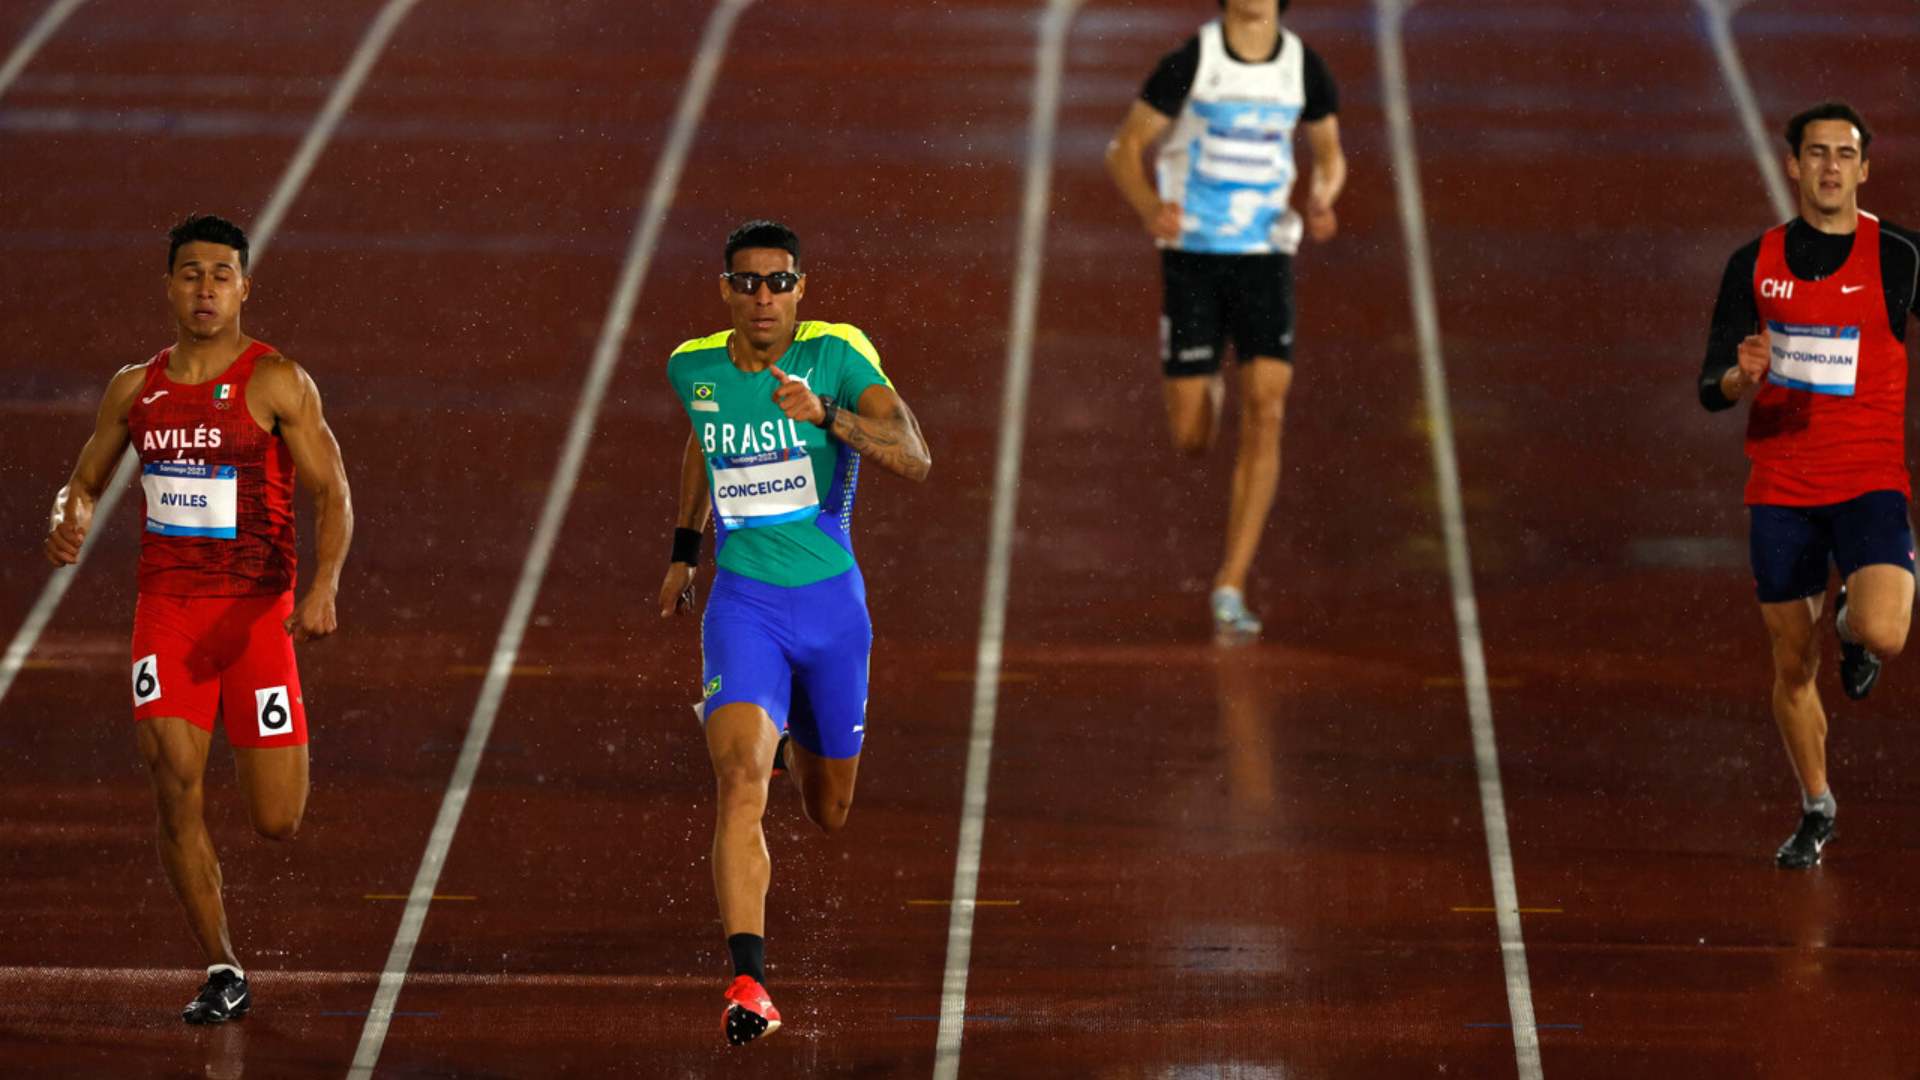 El atleta chileno Martín Kouyoumdjian consiguió la medalla 44 para Chile en los 400 metros